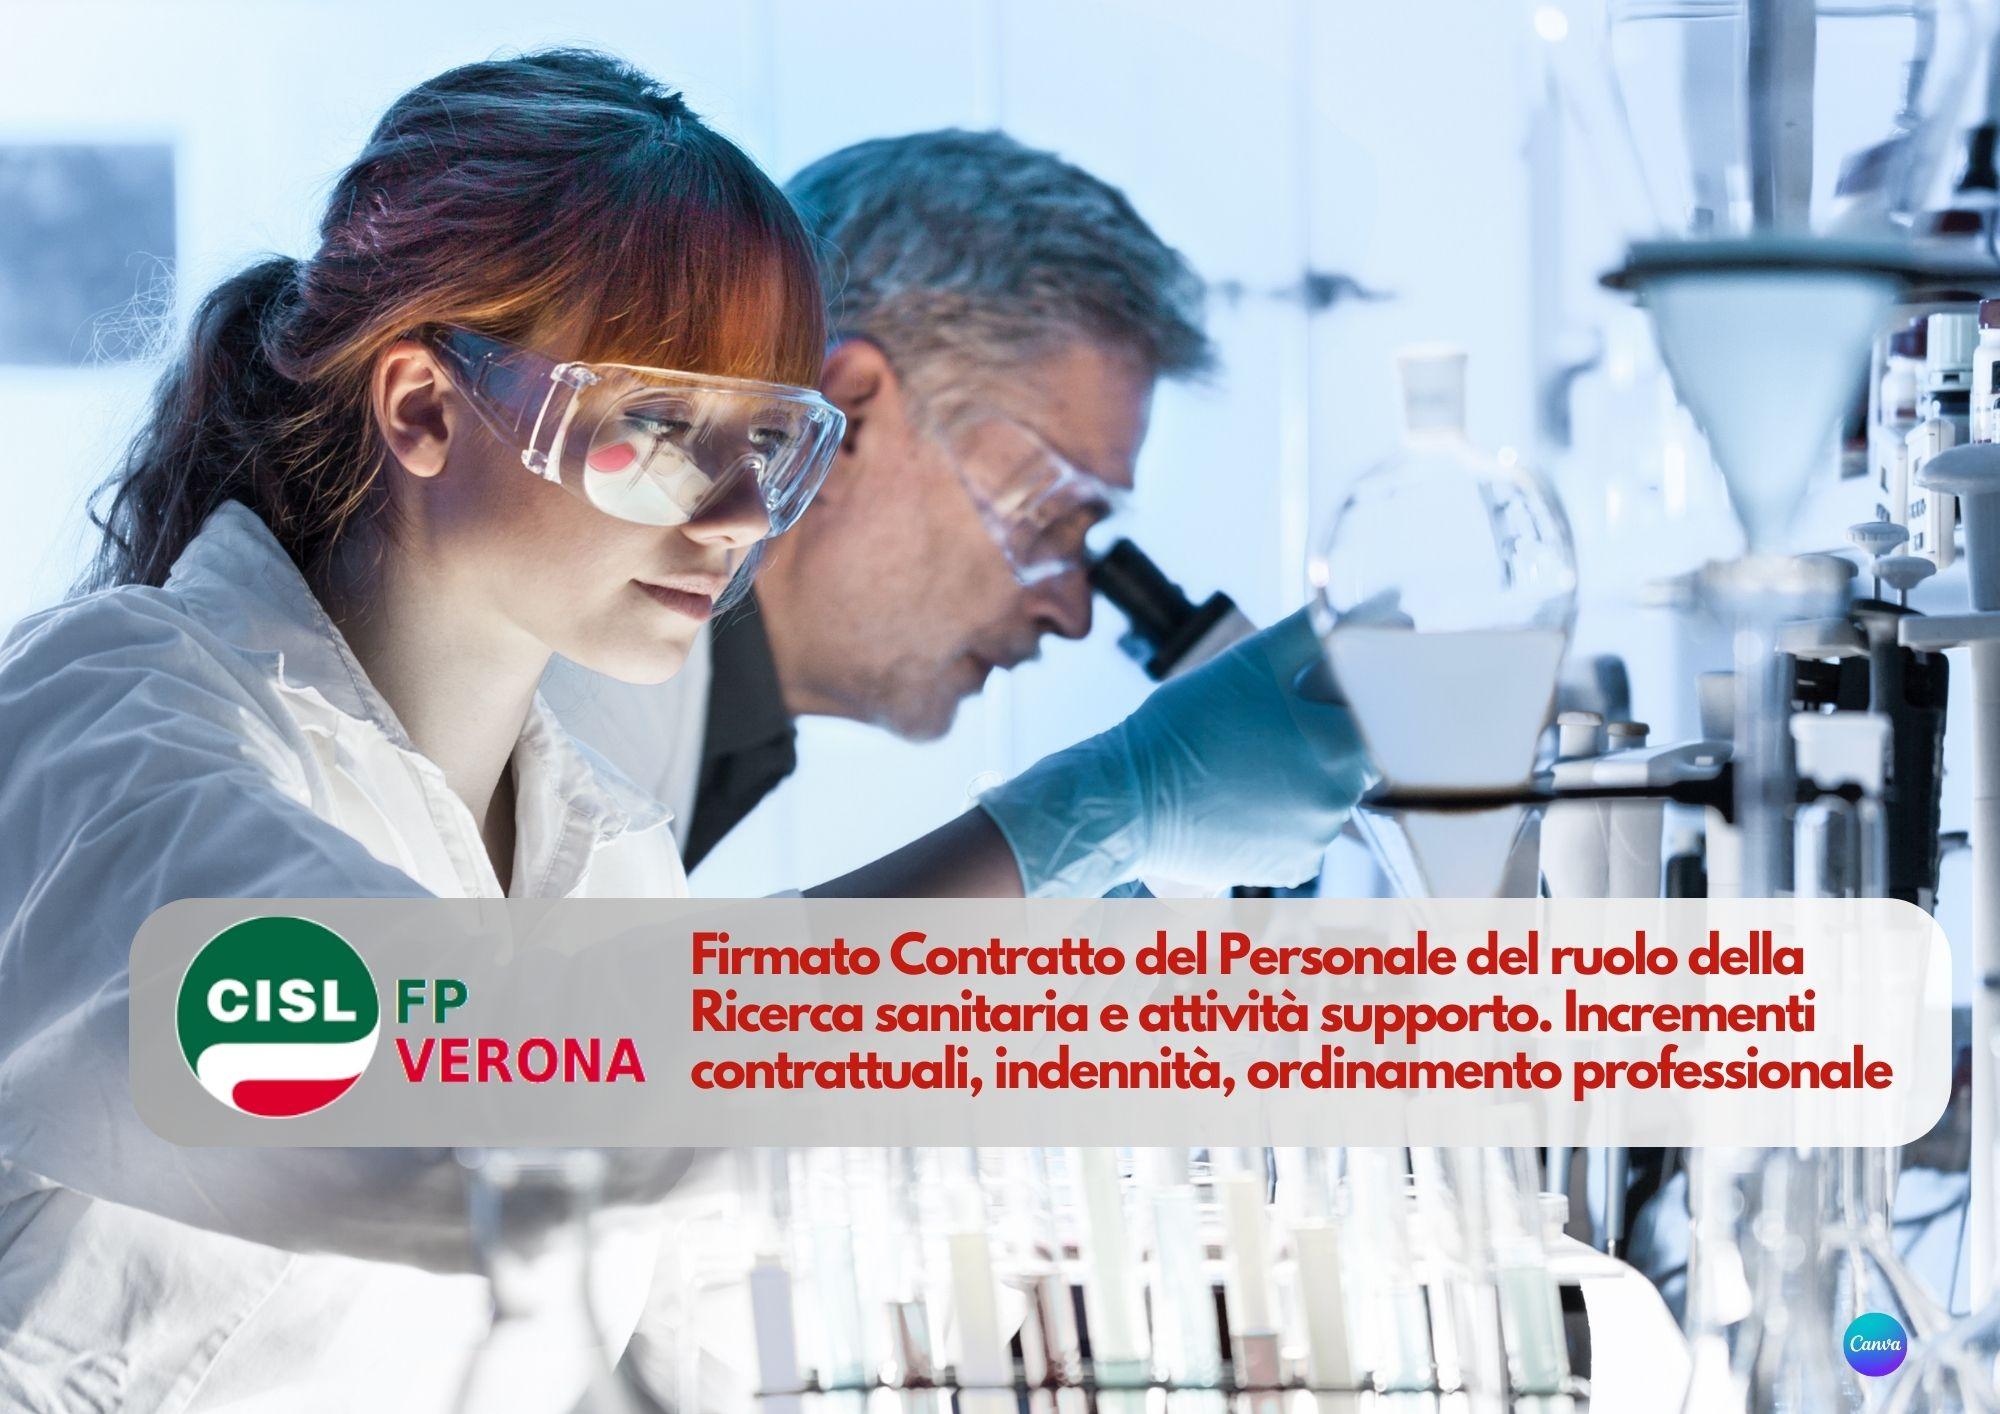 CISL FP Verona. Firmato Contratto del Personale del ruolo della Ricerca sanitaria e attività supporto